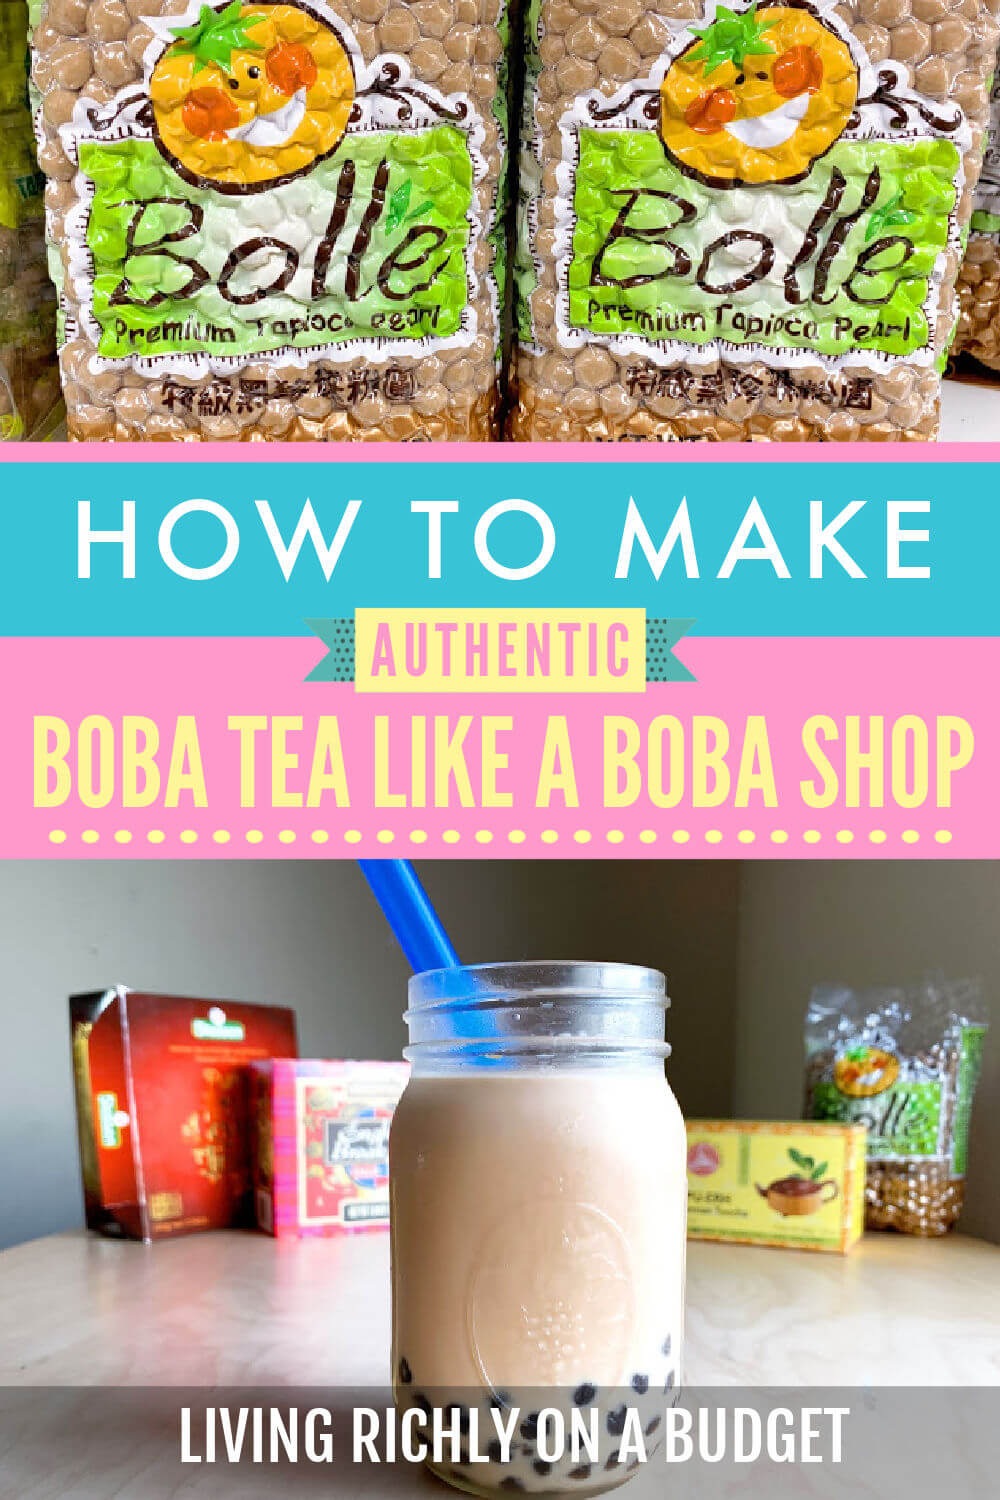 Bubble Tea Like a Boba Shop